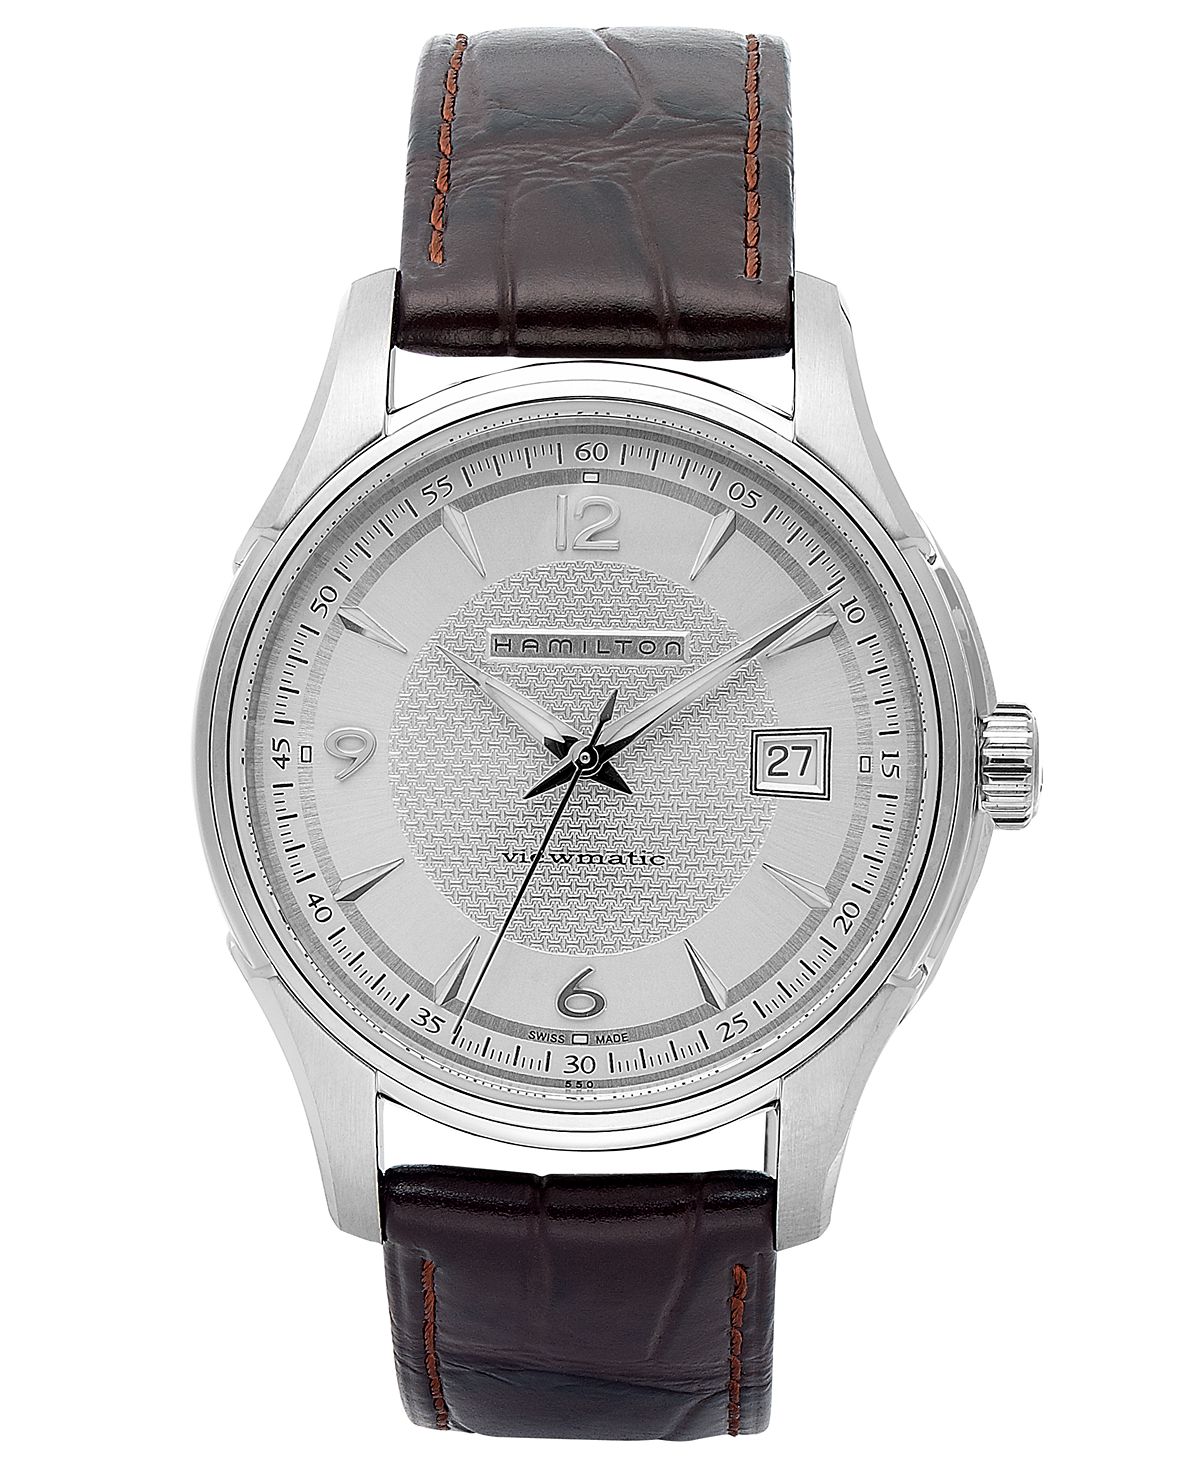 Мужские швейцарские автоматические часы Jazzmaster Viewmatic с коричневым кожаным ремешком 40 мм H32515555 Hamilton часы hamilton jazzmaster chrono quartz h32612741